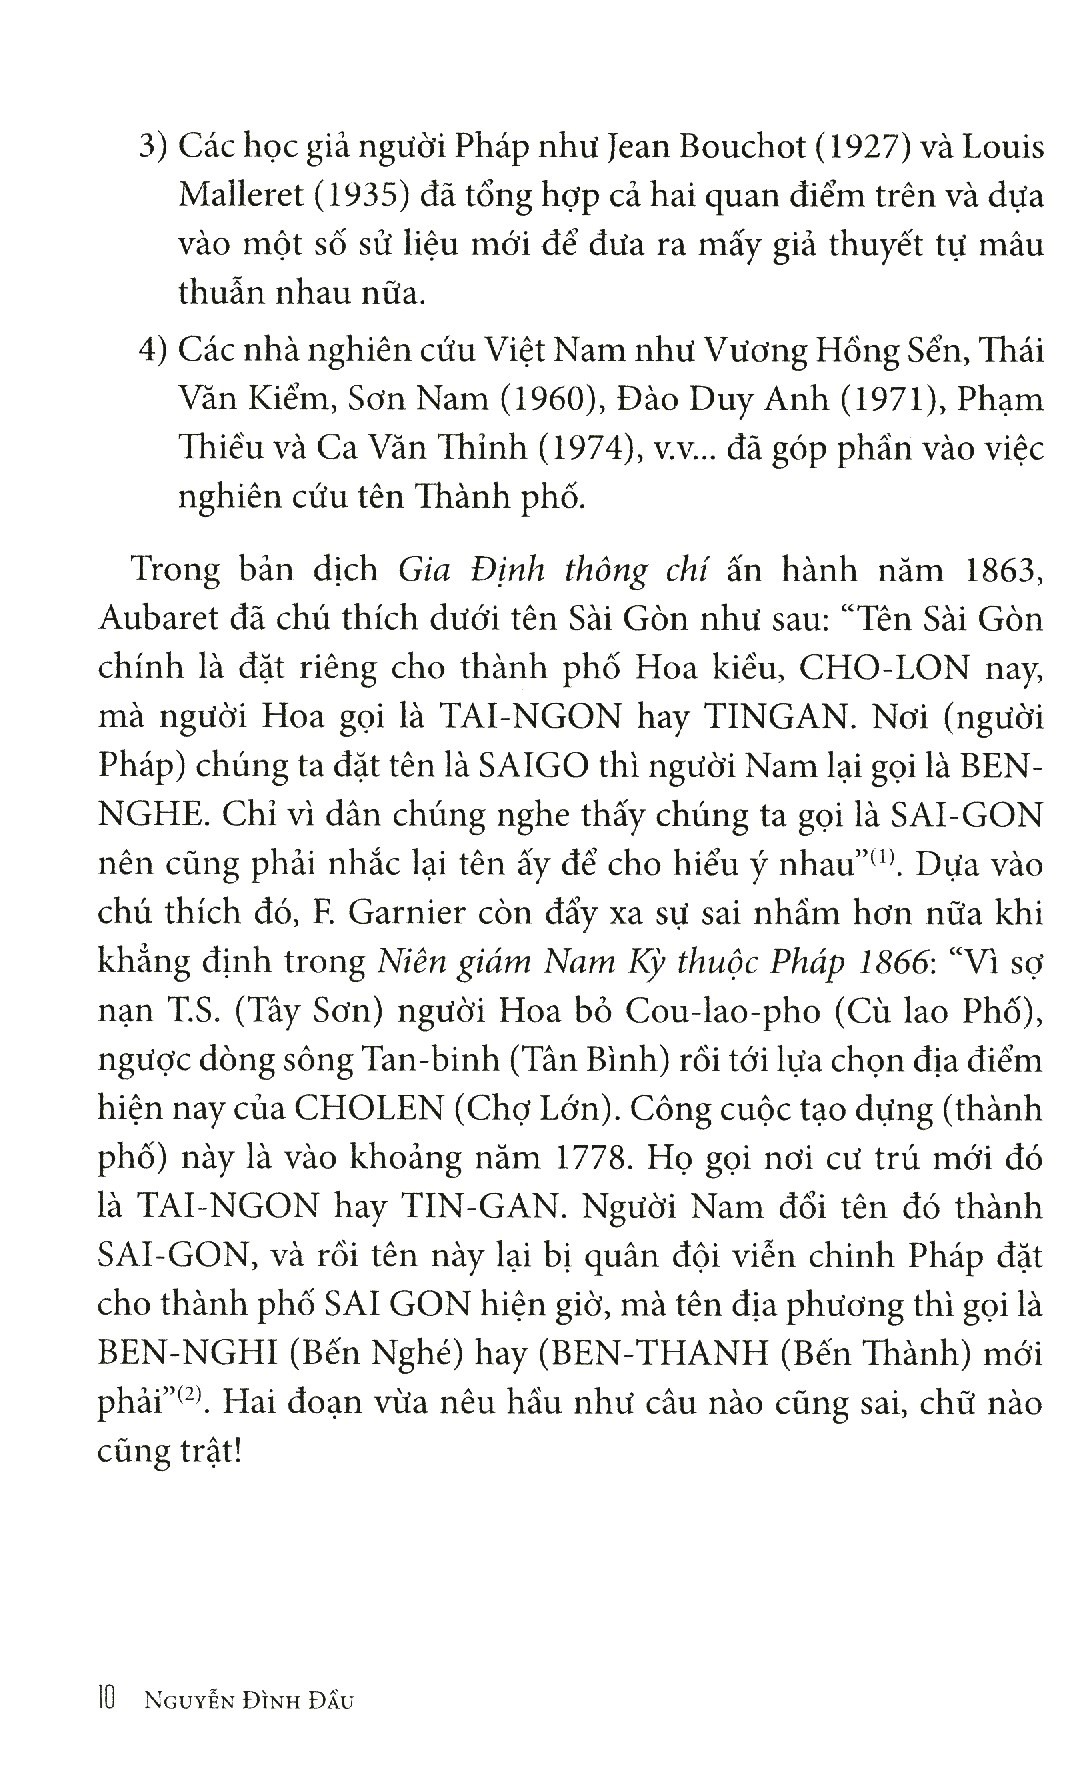 Tạp Ghi Việt Sử Địa - Tập 3 PDF